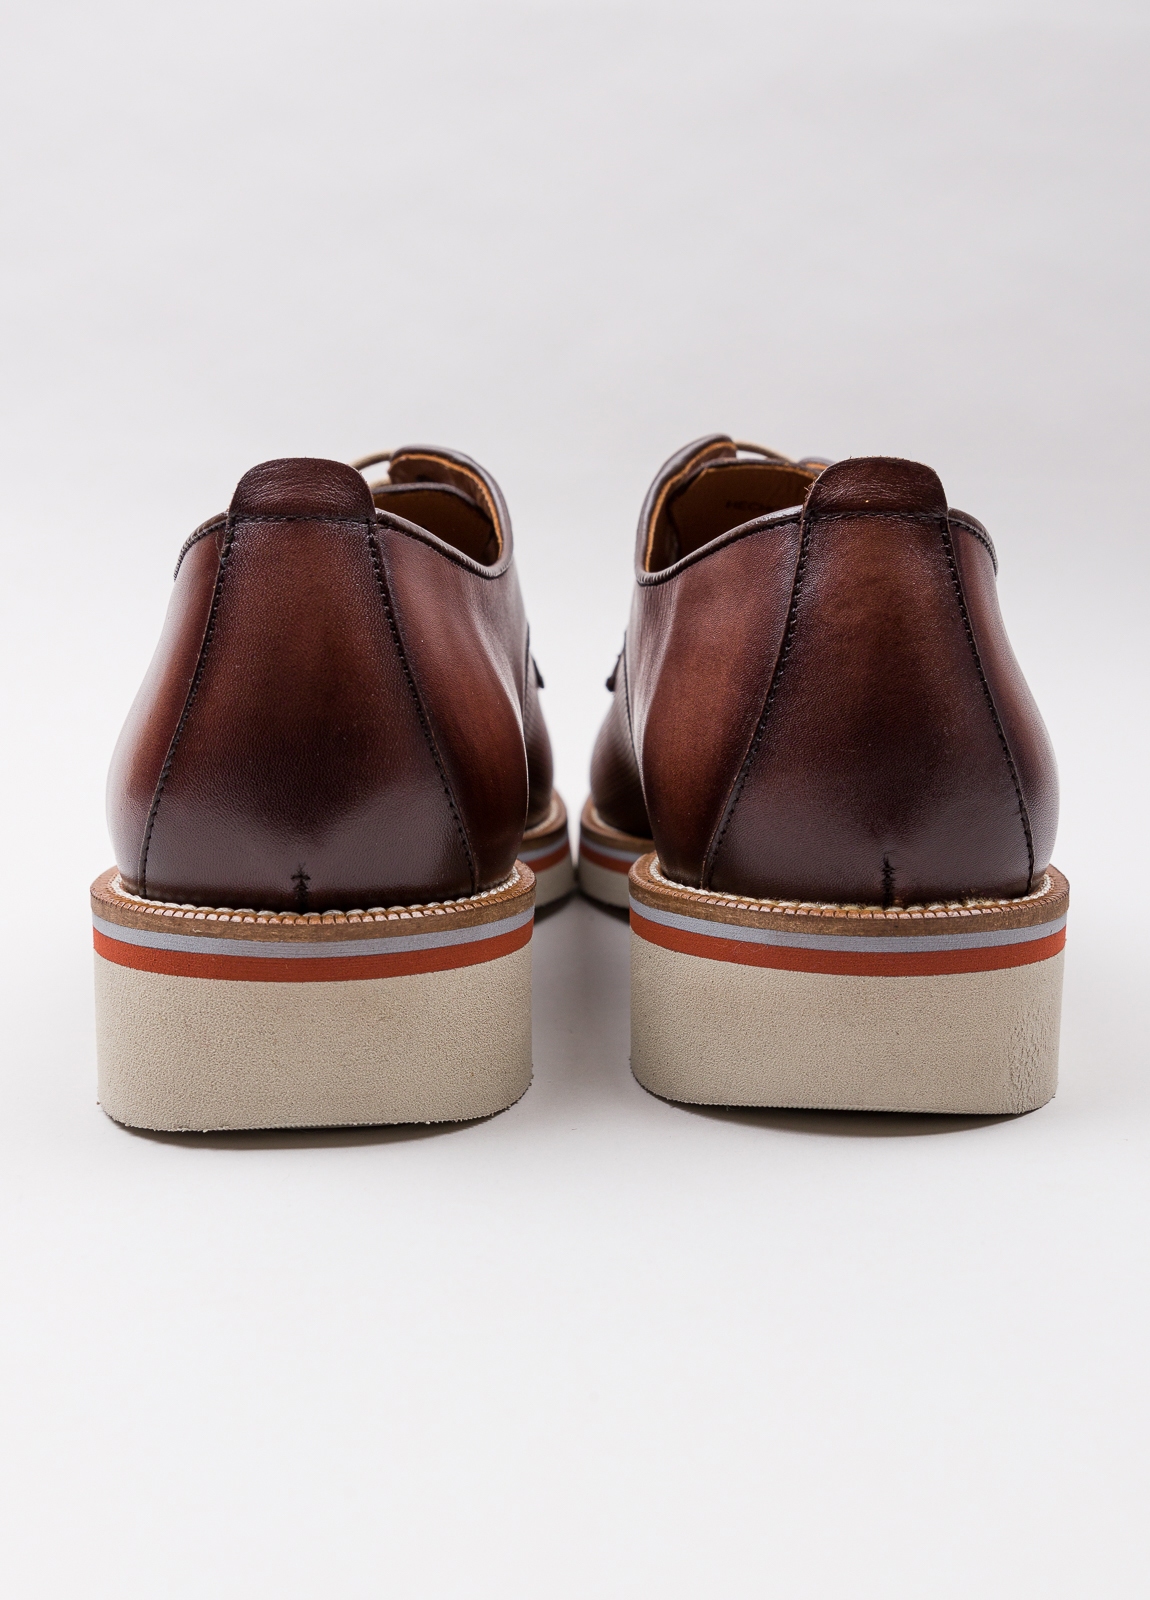 Zapato sport wear furest colección troquelado marrón - Ítem3